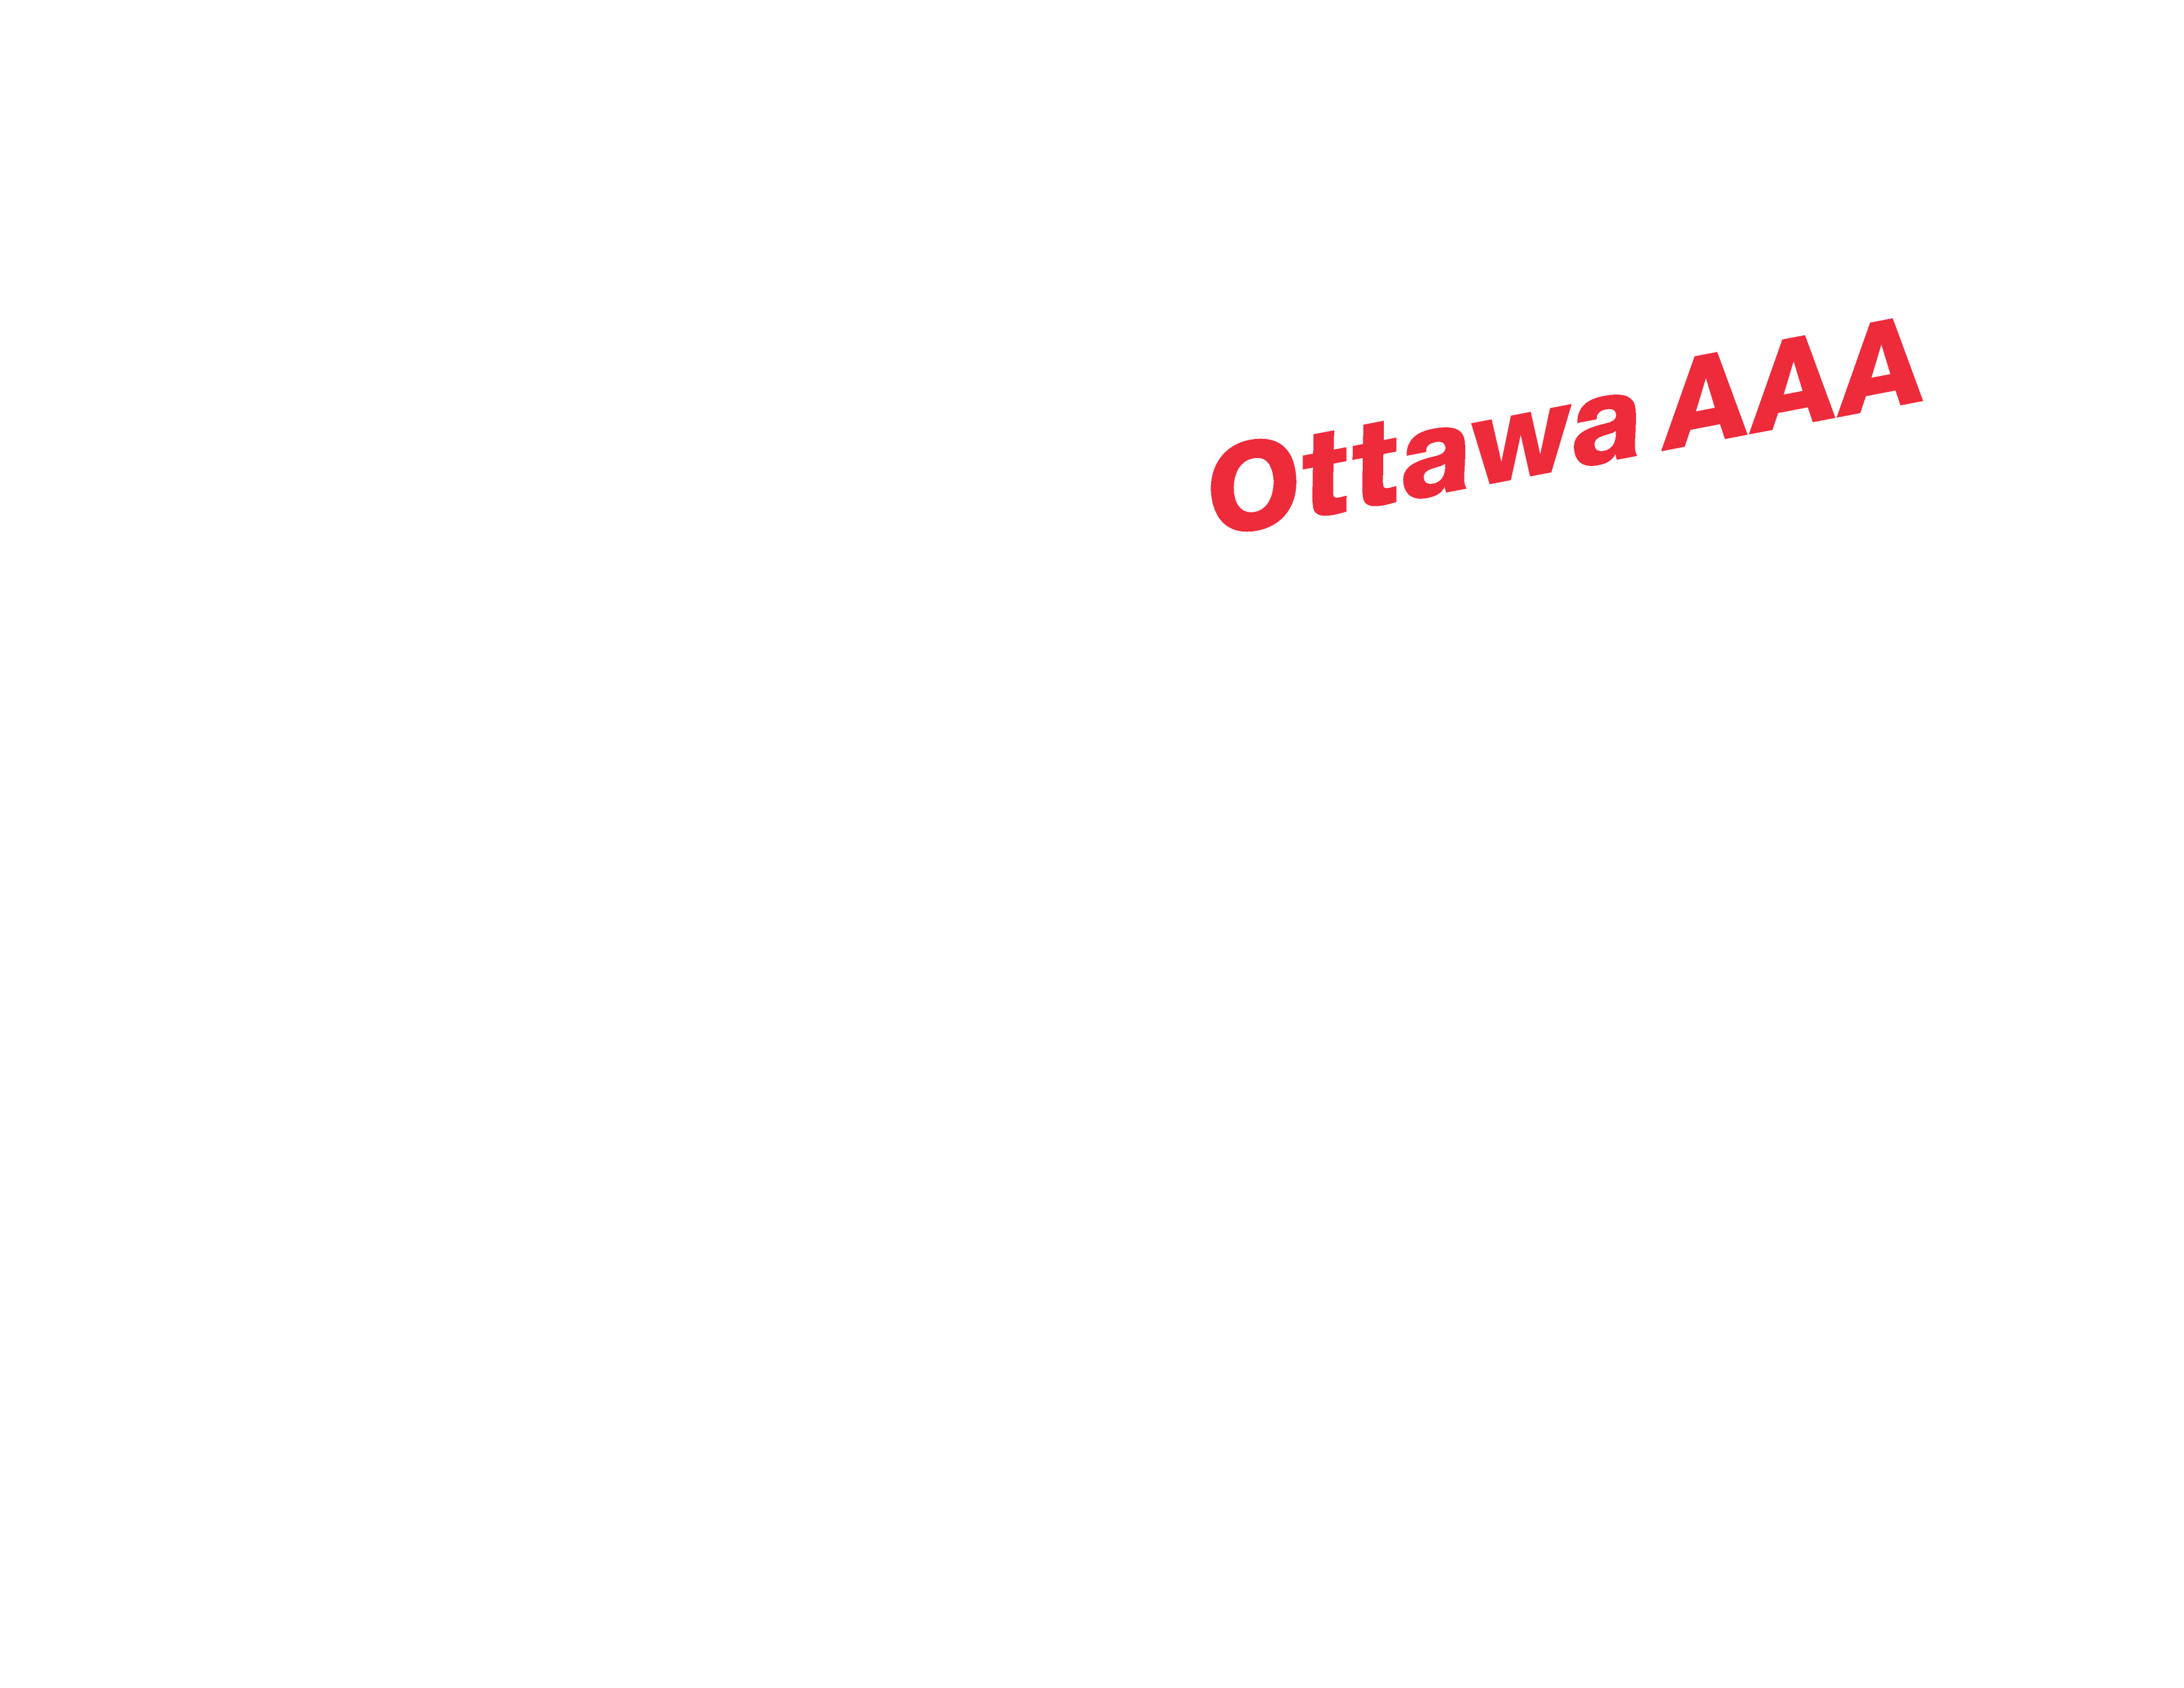 Ottawa Myers Automotive AAA